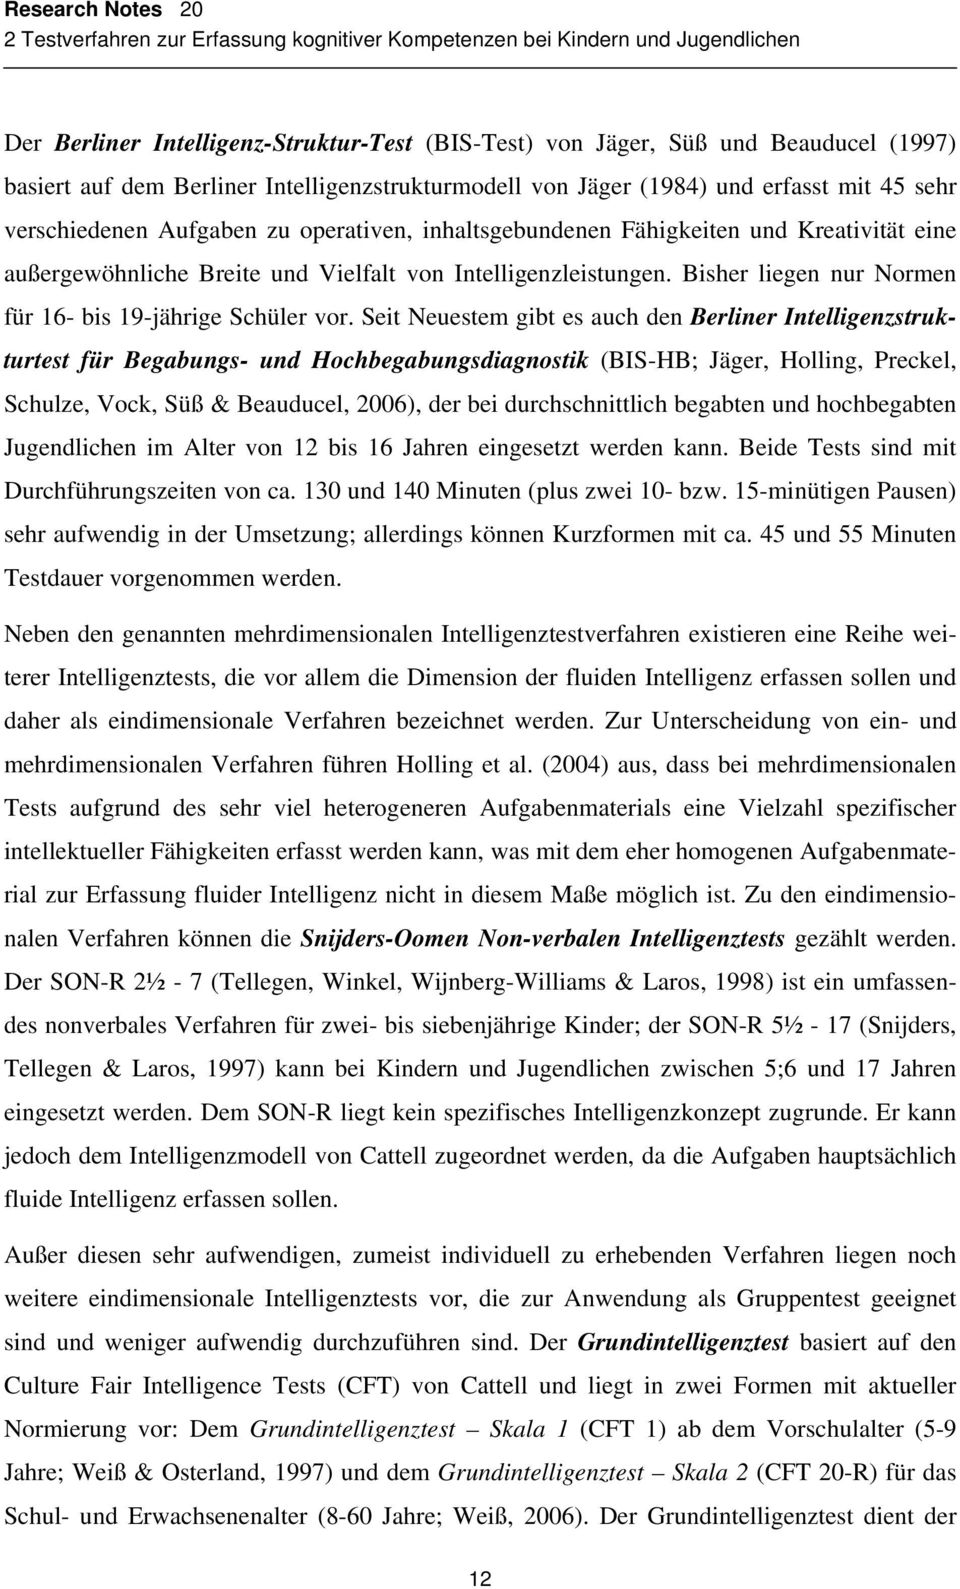 Seit Neuestem gibt es auch den Berliner Intelligenzstrukturtest für Begabungs- und Hochbegabungsdiagnostik (BIS-HB; Jäger, Holling, Preckel, Schulze, Vock, Süß & Beauducel, 2006), der bei